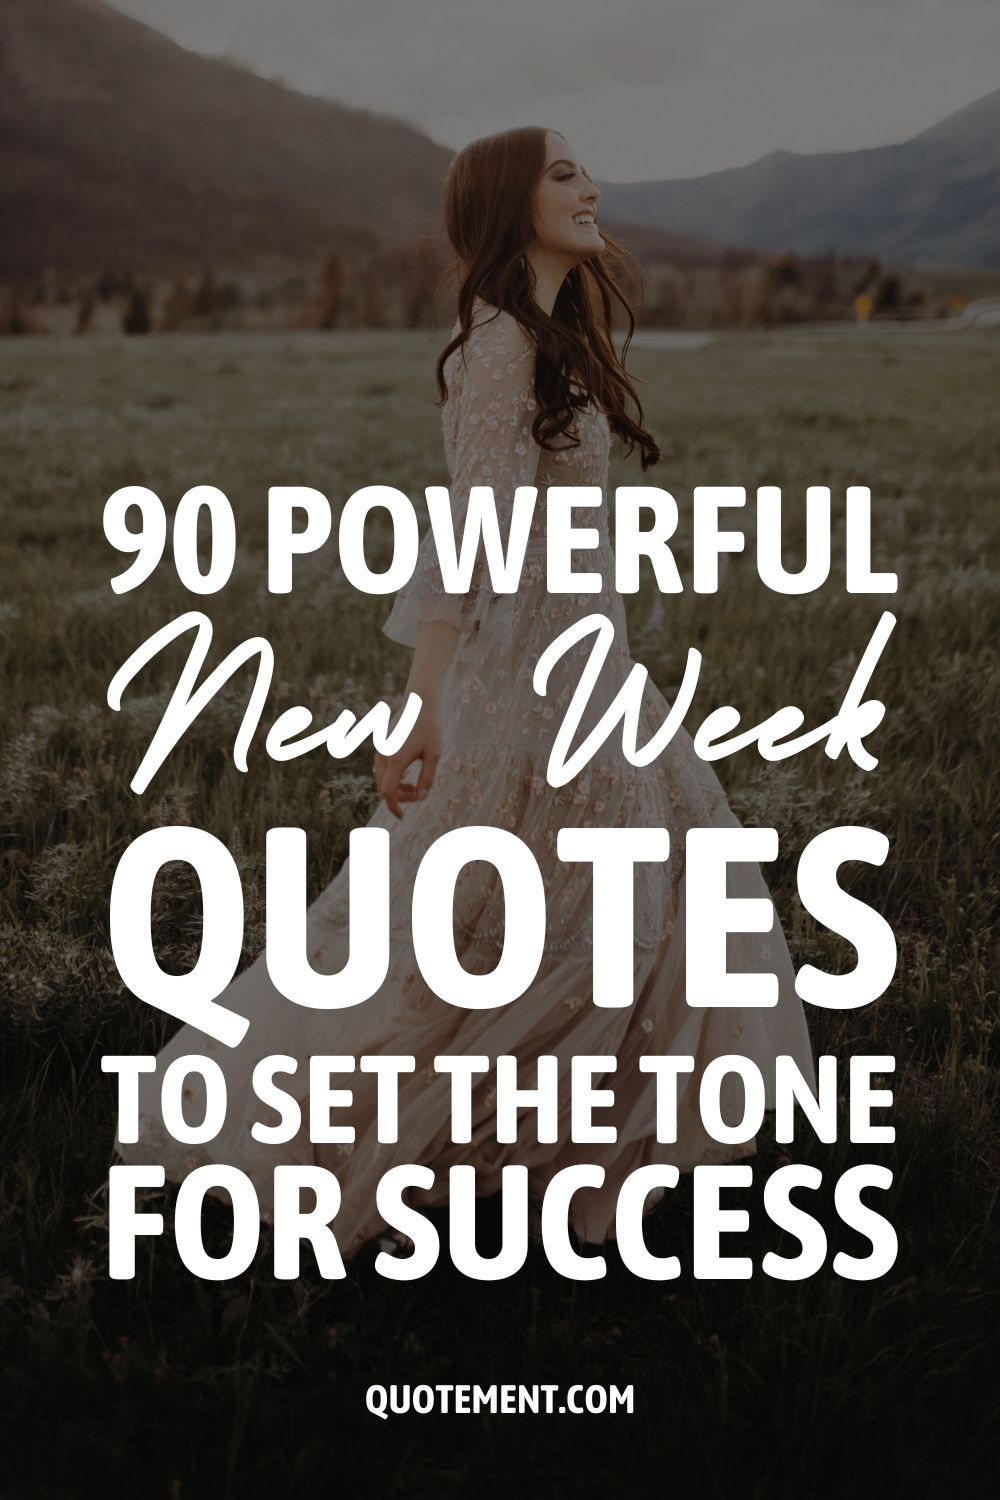 90 frases poderosas para la nueva semana que marcan la pauta del éxito 